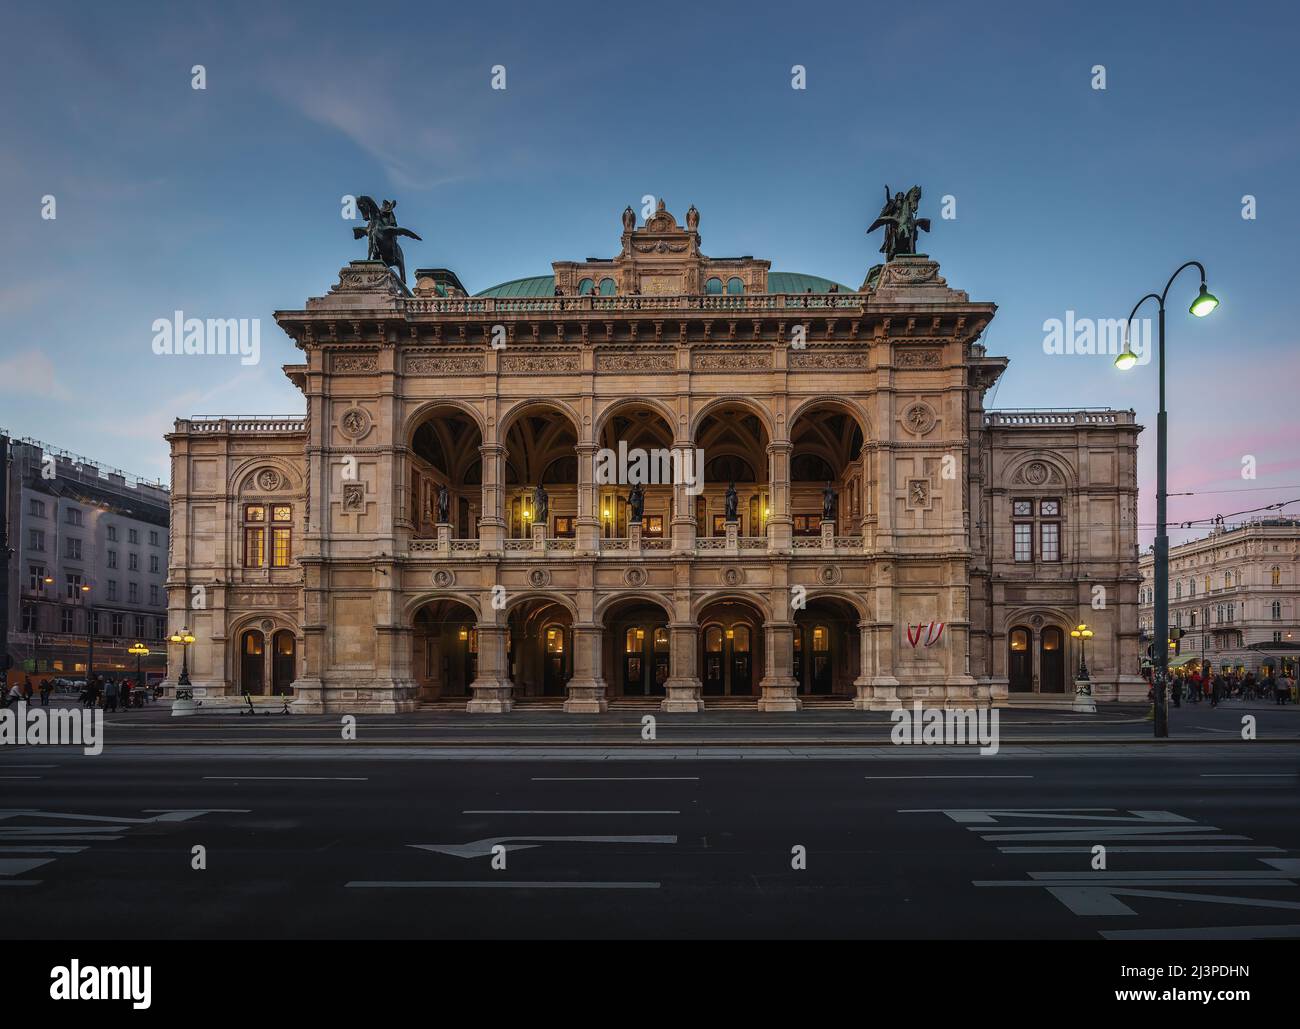 Opéra d'Etat de Vienne (Wiener Staatsoper) au coucher du soleil - Vienne, Autriche Banque D'Images